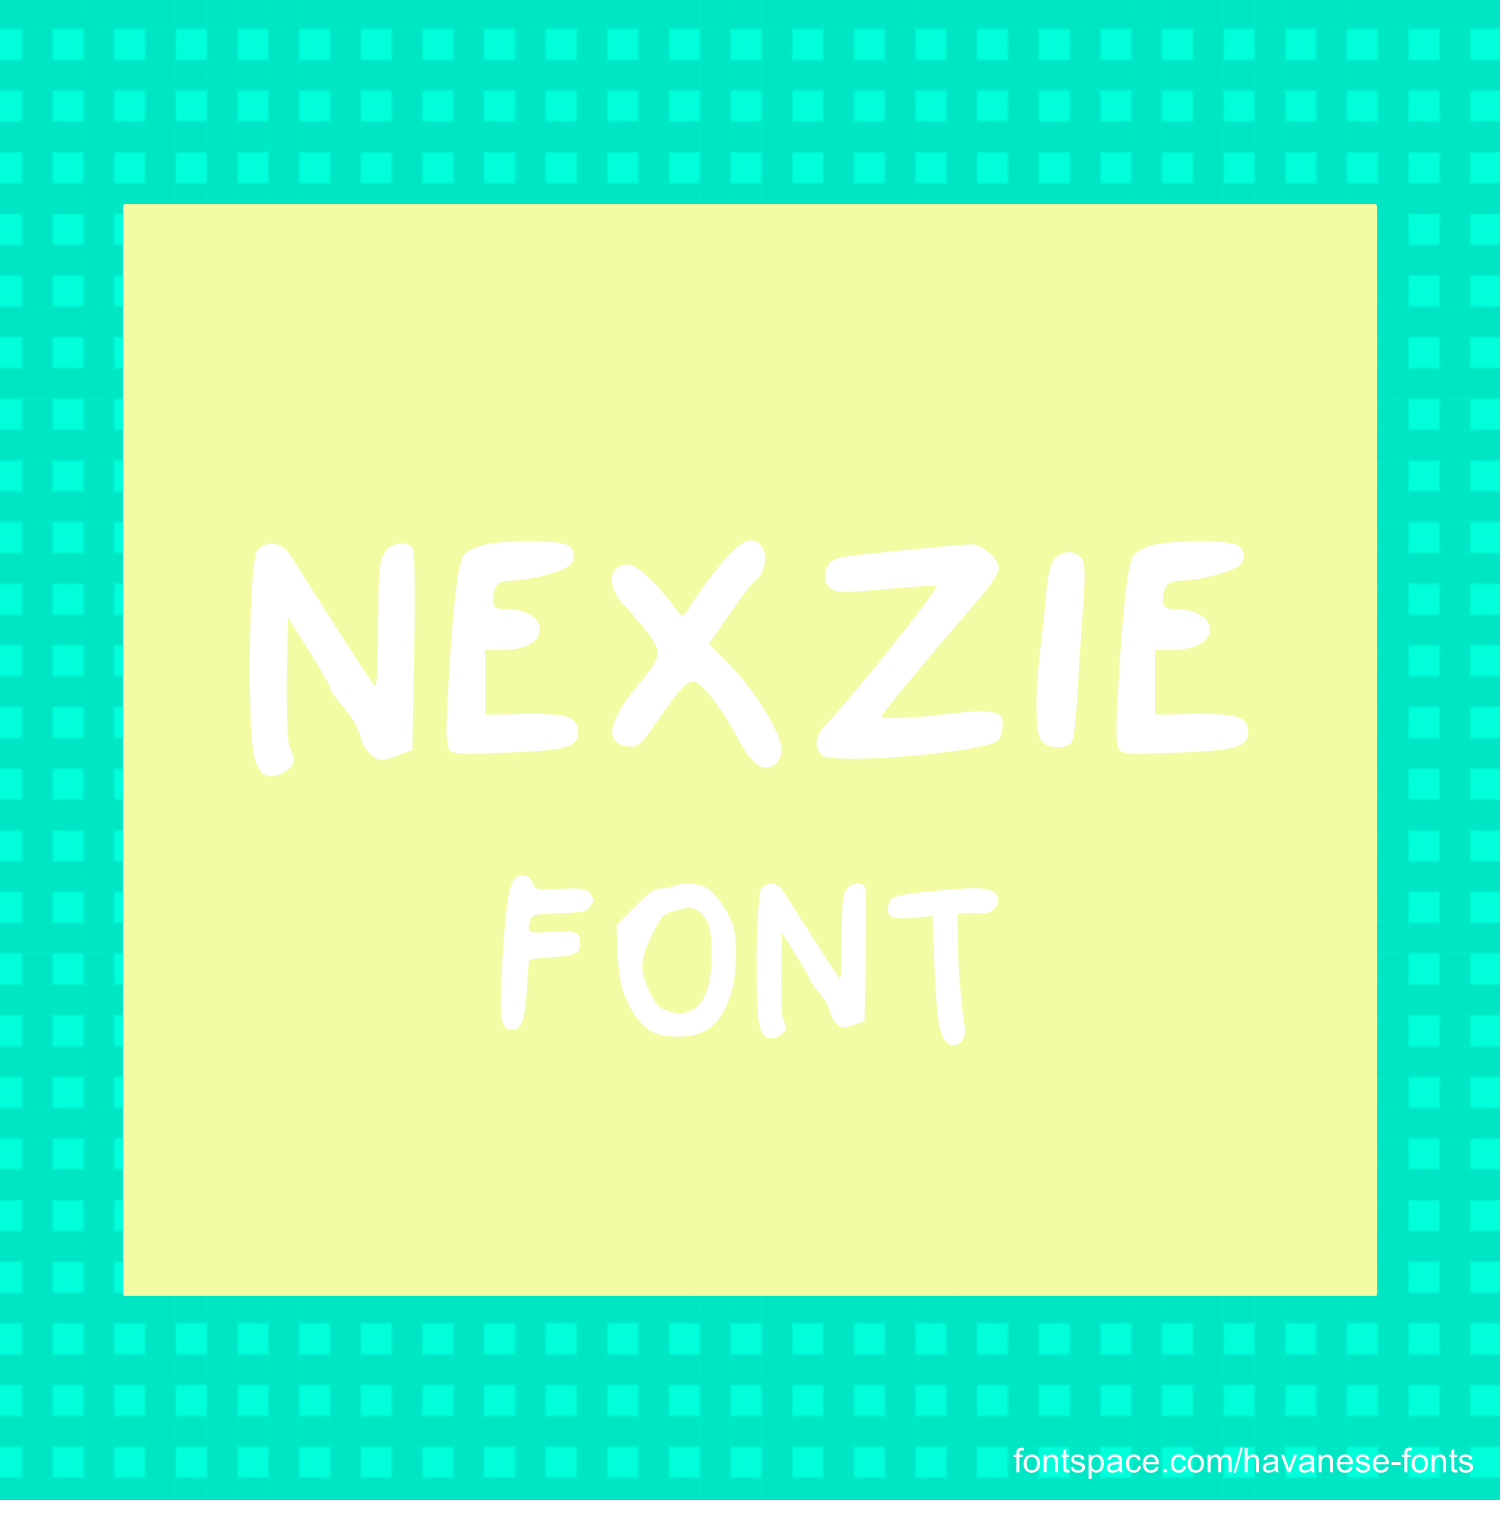 Nexzie Font